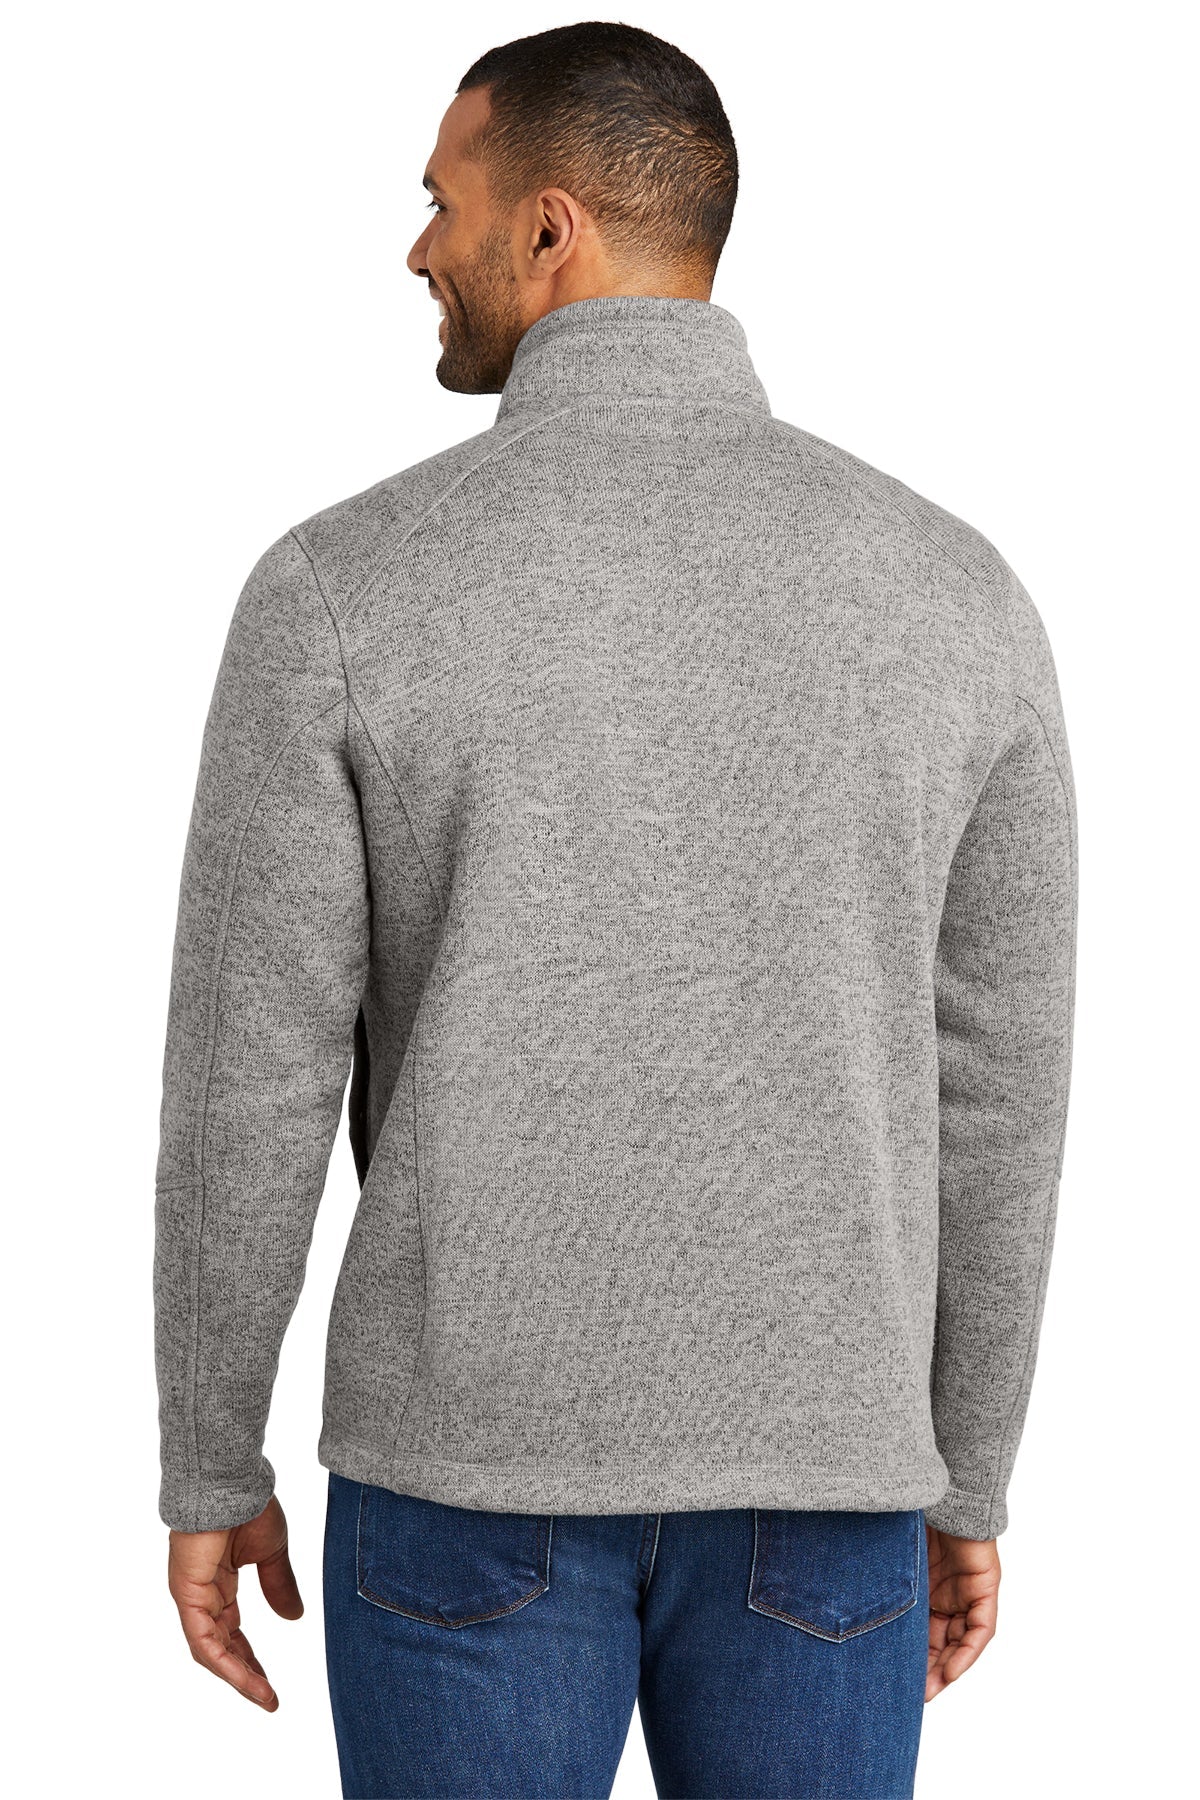 Port Authority Arc Sweater Fleece Custom 1/4-Zips, Deep Smoke Heather